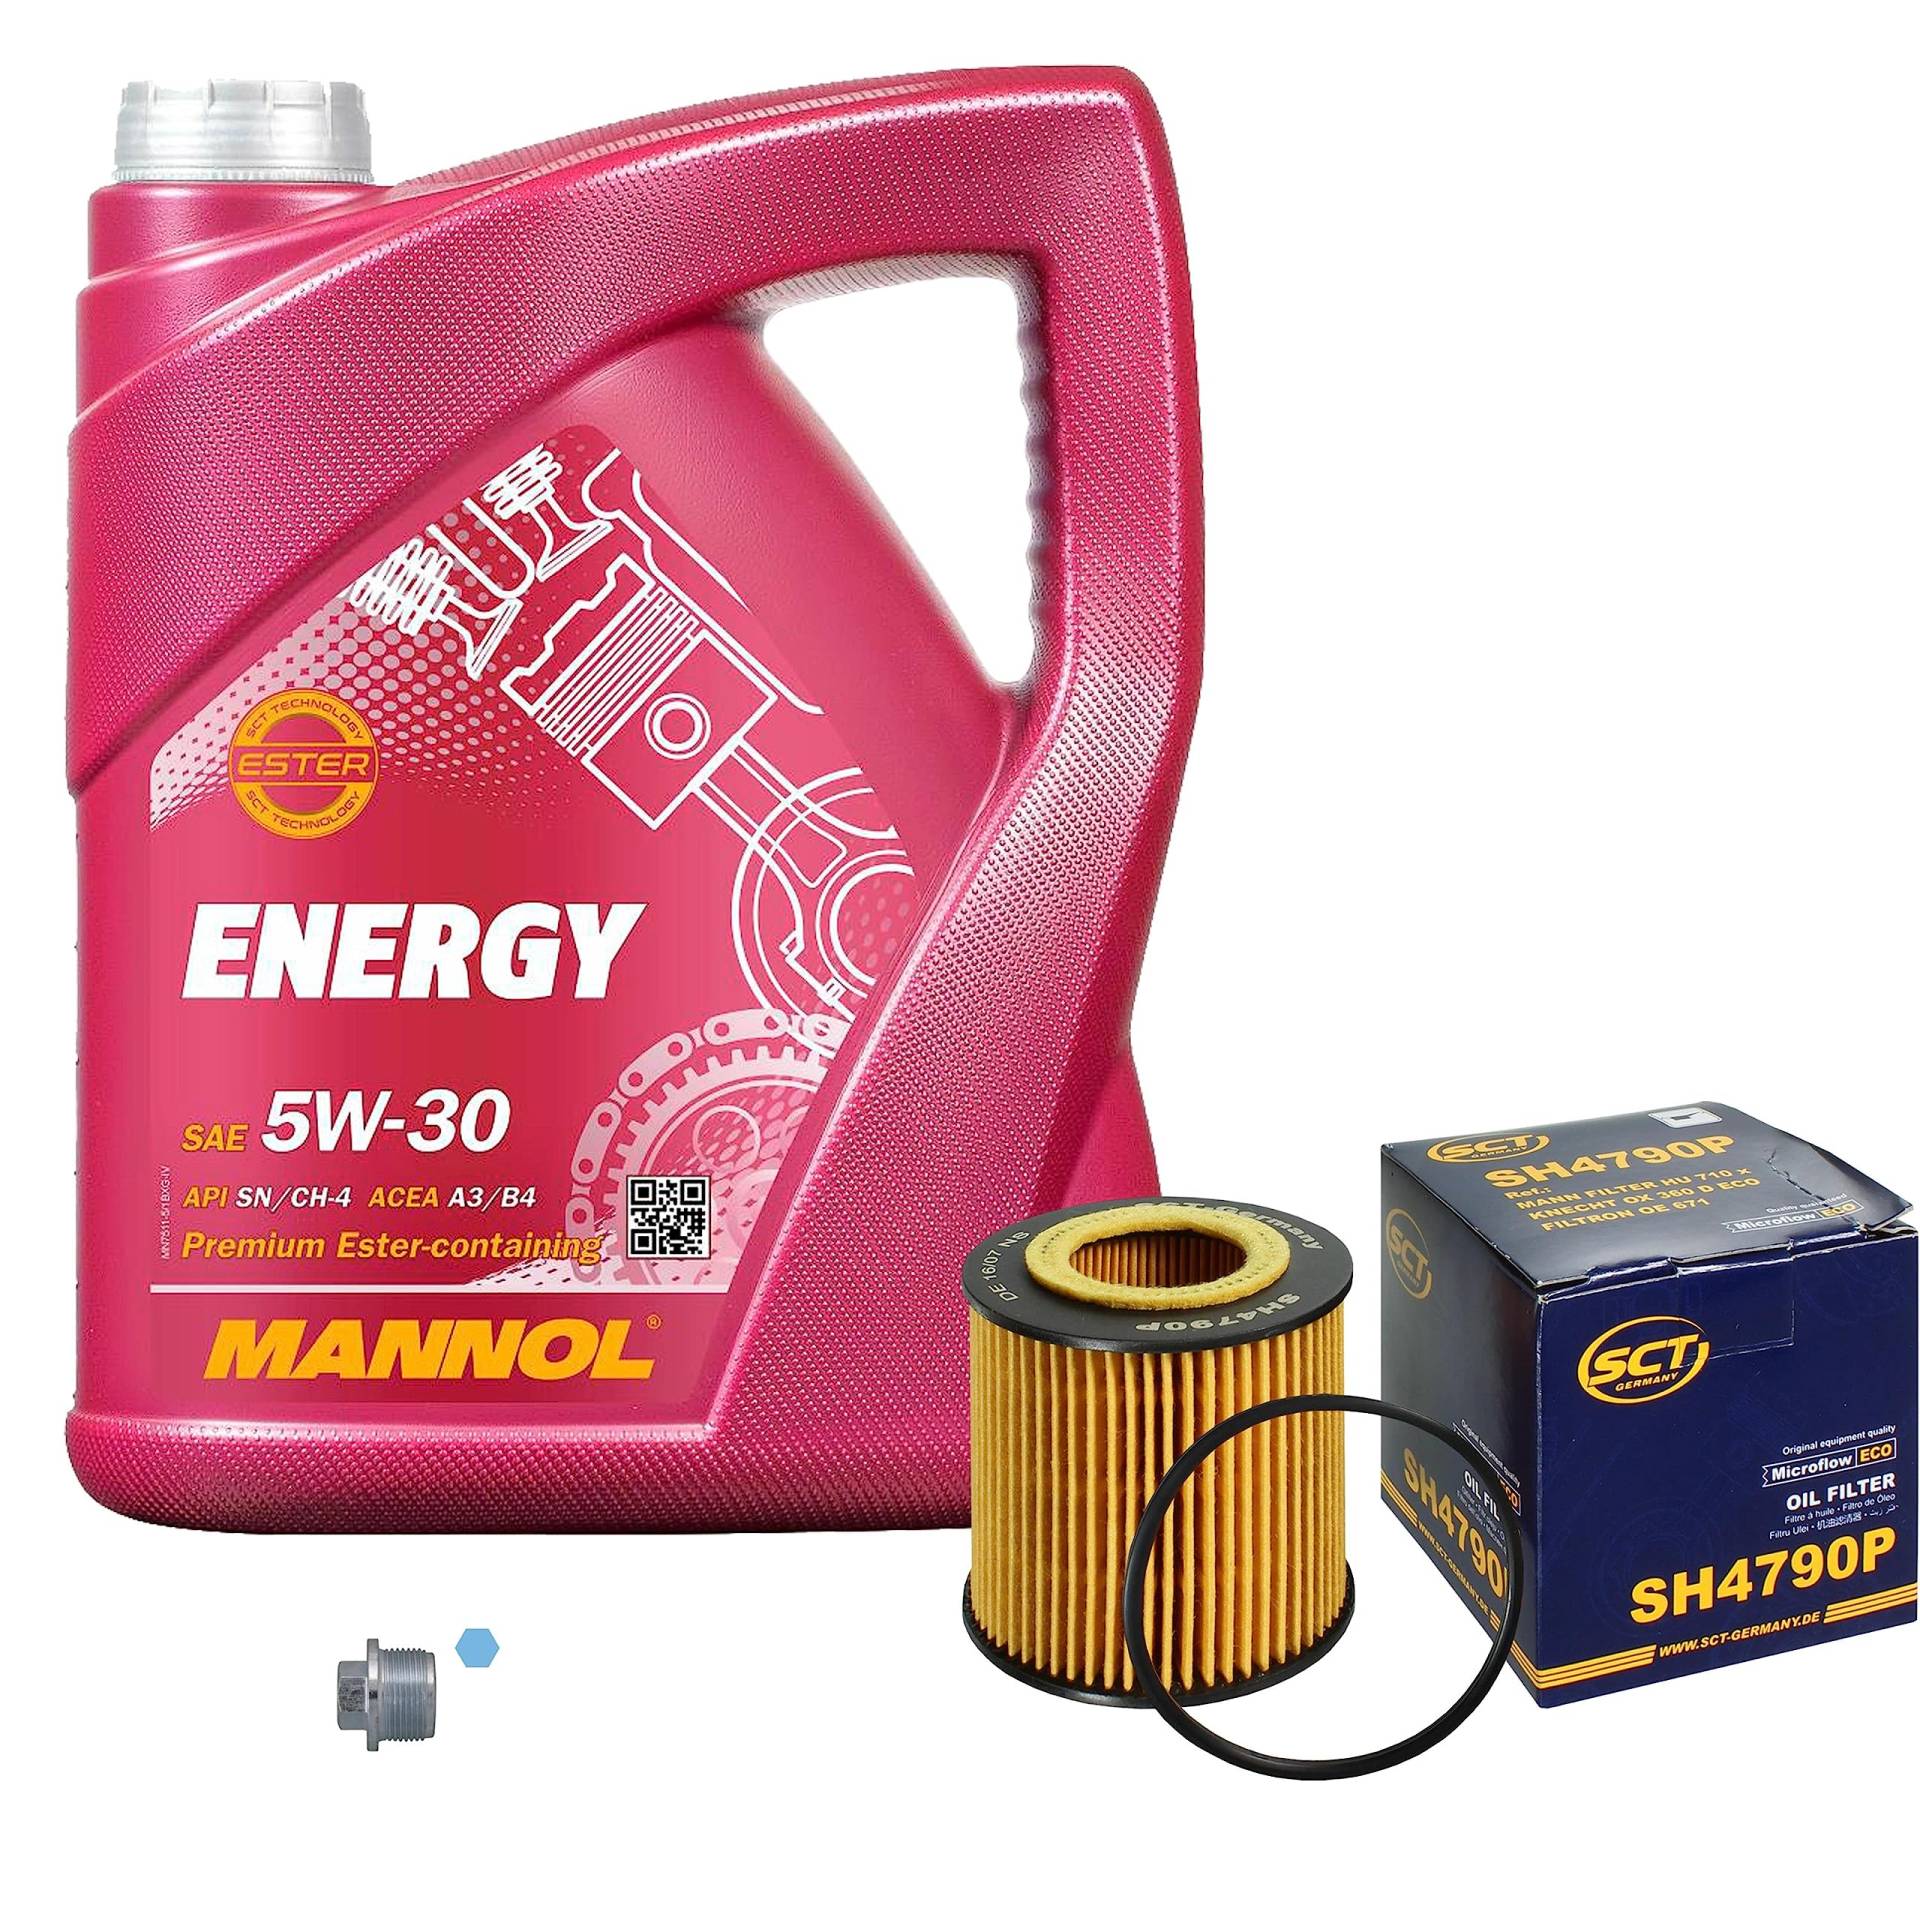 Inspektionspaket Wartungspaket Filterset mit 5 L Motoröl Energy 5W-30, Ölfilter, Verschlussschraube von EISENFELS